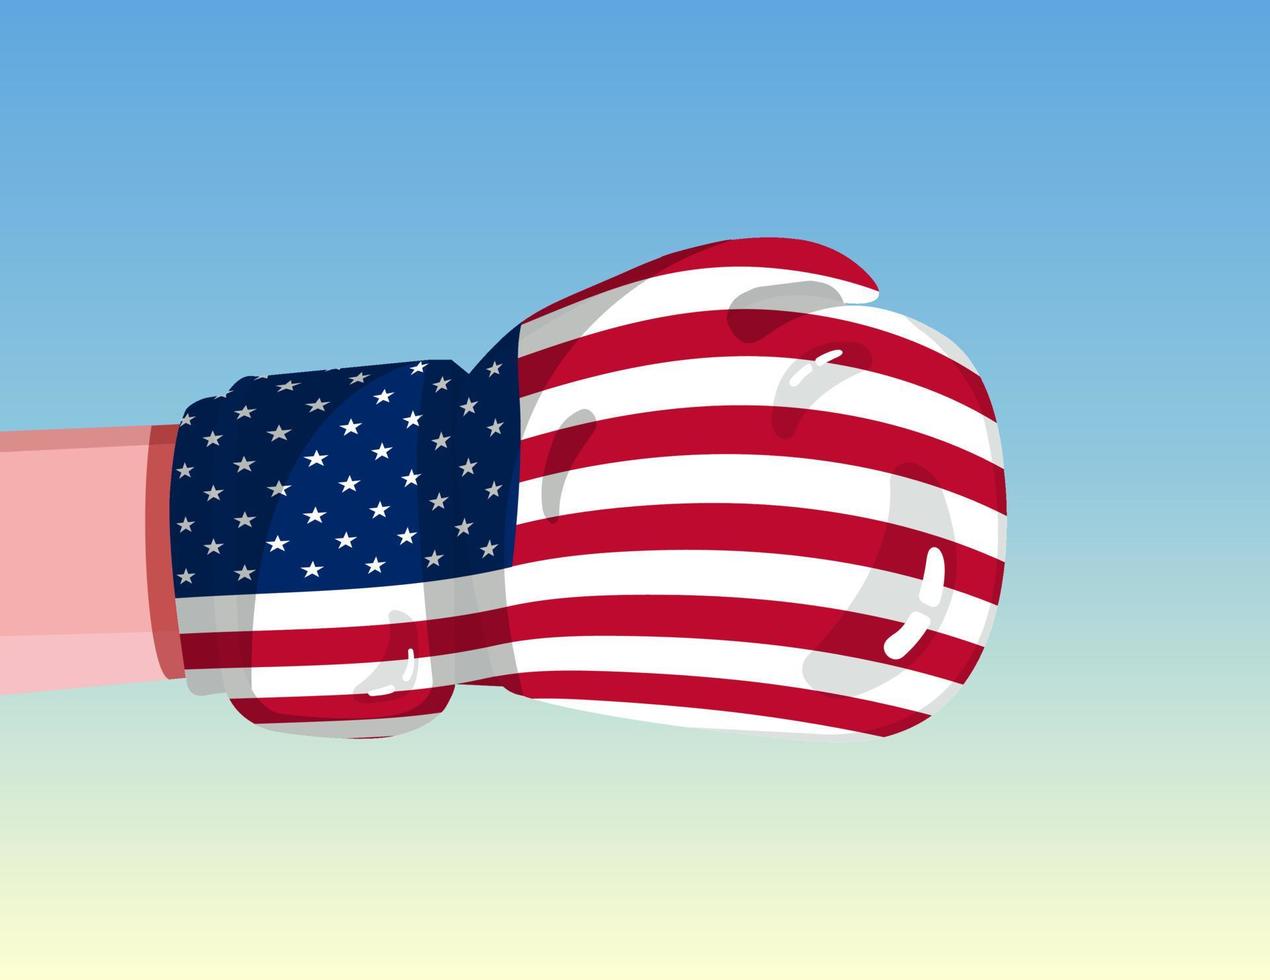 Flagge der Vereinigten Staaten auf Boxhandschuh. Konfrontation zwischen Ländern mit Wettbewerbsmacht. beleidigende Haltung. Gewaltenteilung. vorlagenfertiges Design. vektor